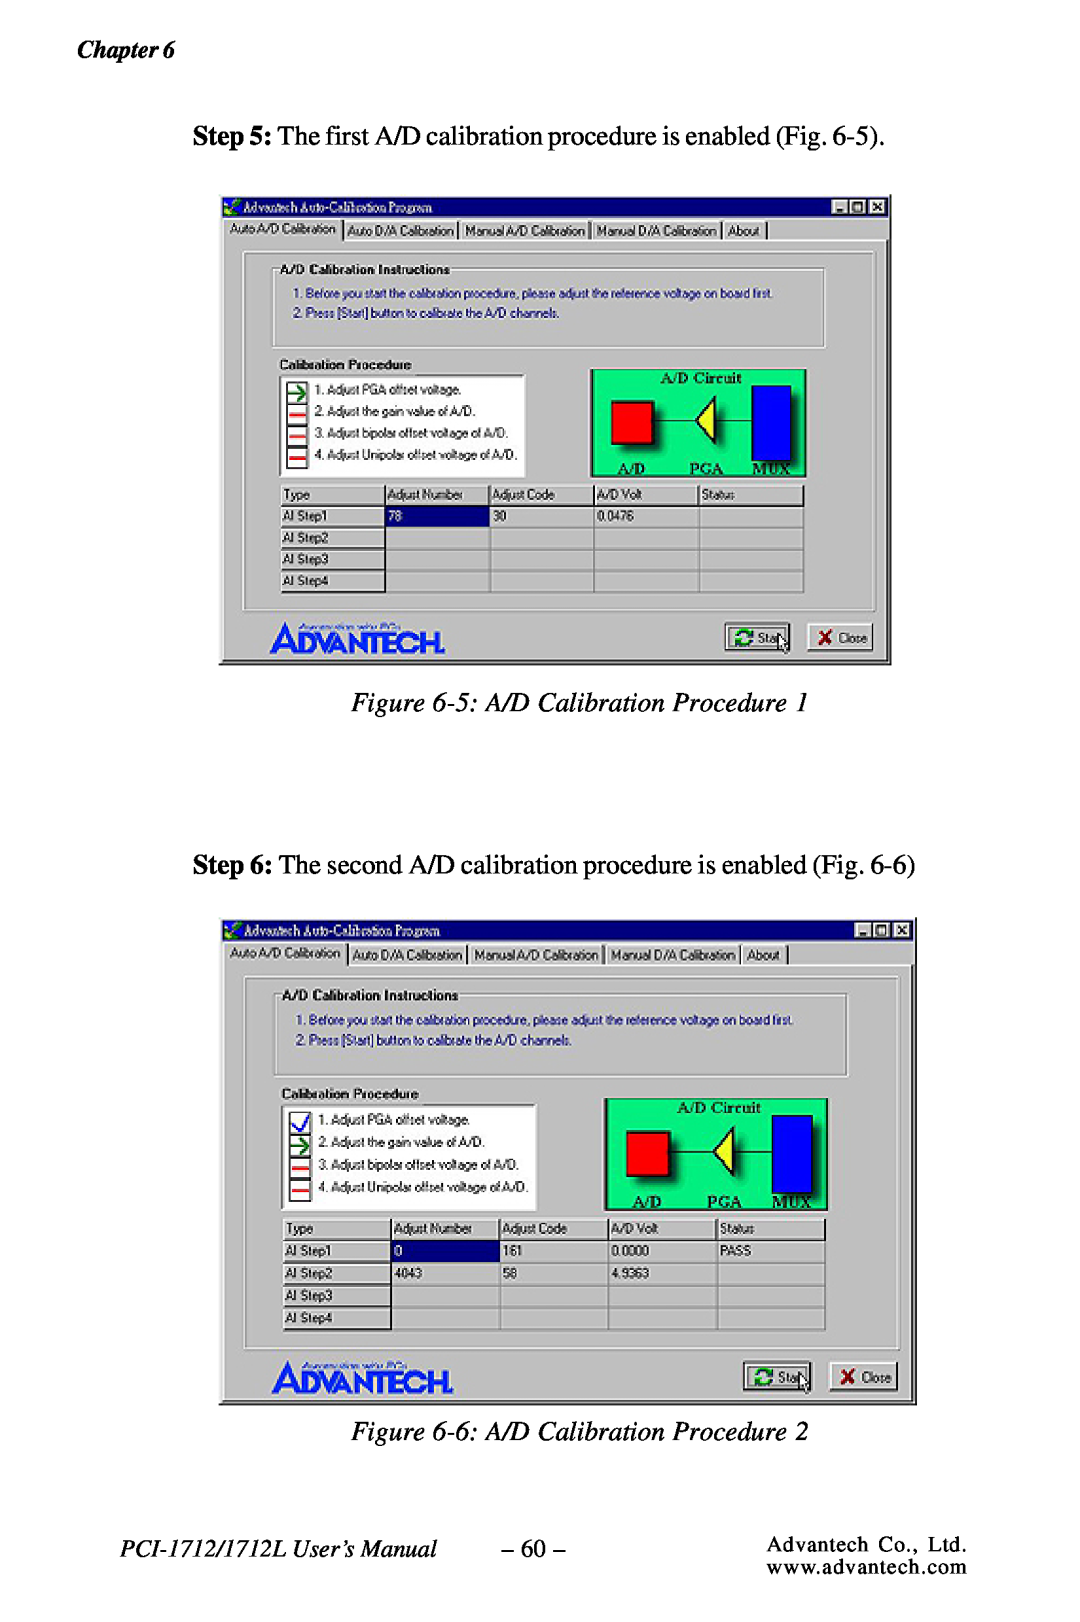 Konica Minolta 5 A/D Calibration Procedure, 6 A/D Calibration Procedure, Chapter, PCI-1712/1712L User’s Manual 